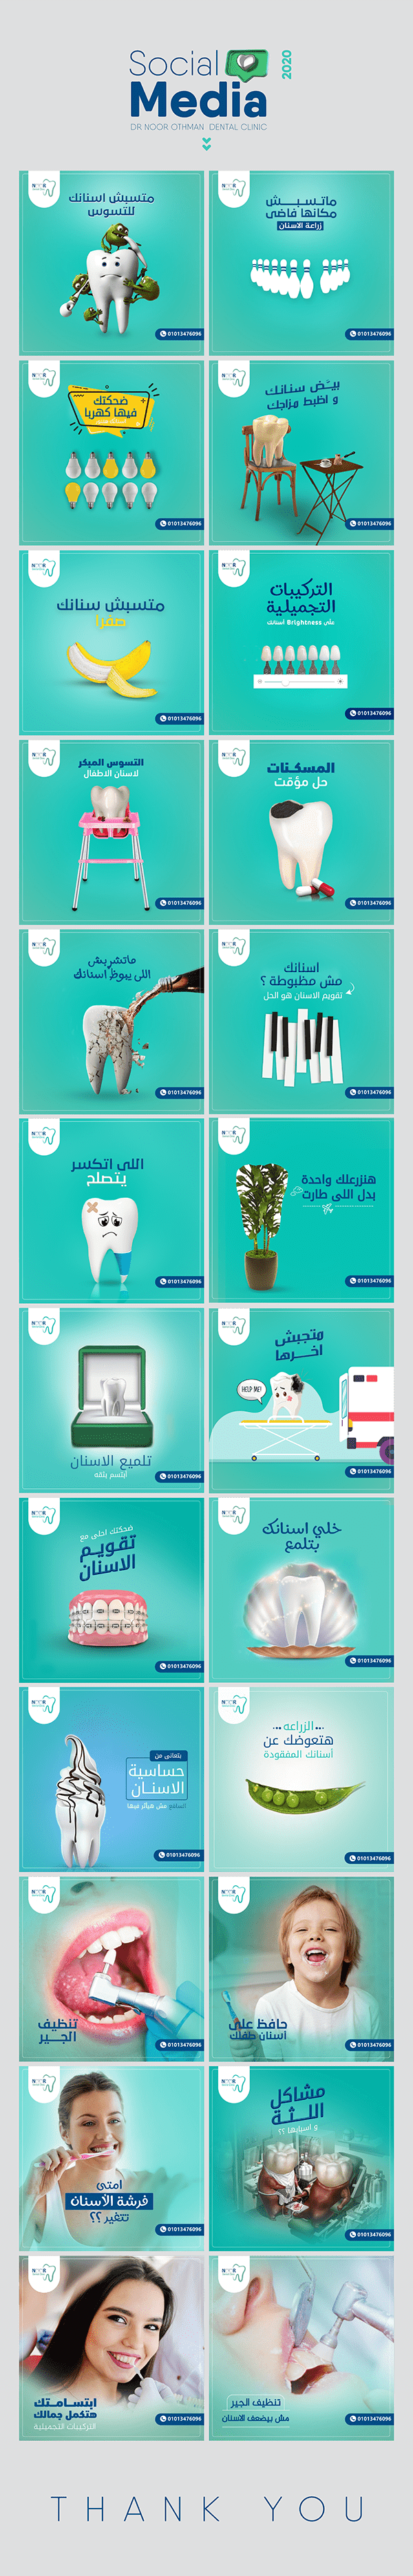 Dental Clinic Social Media